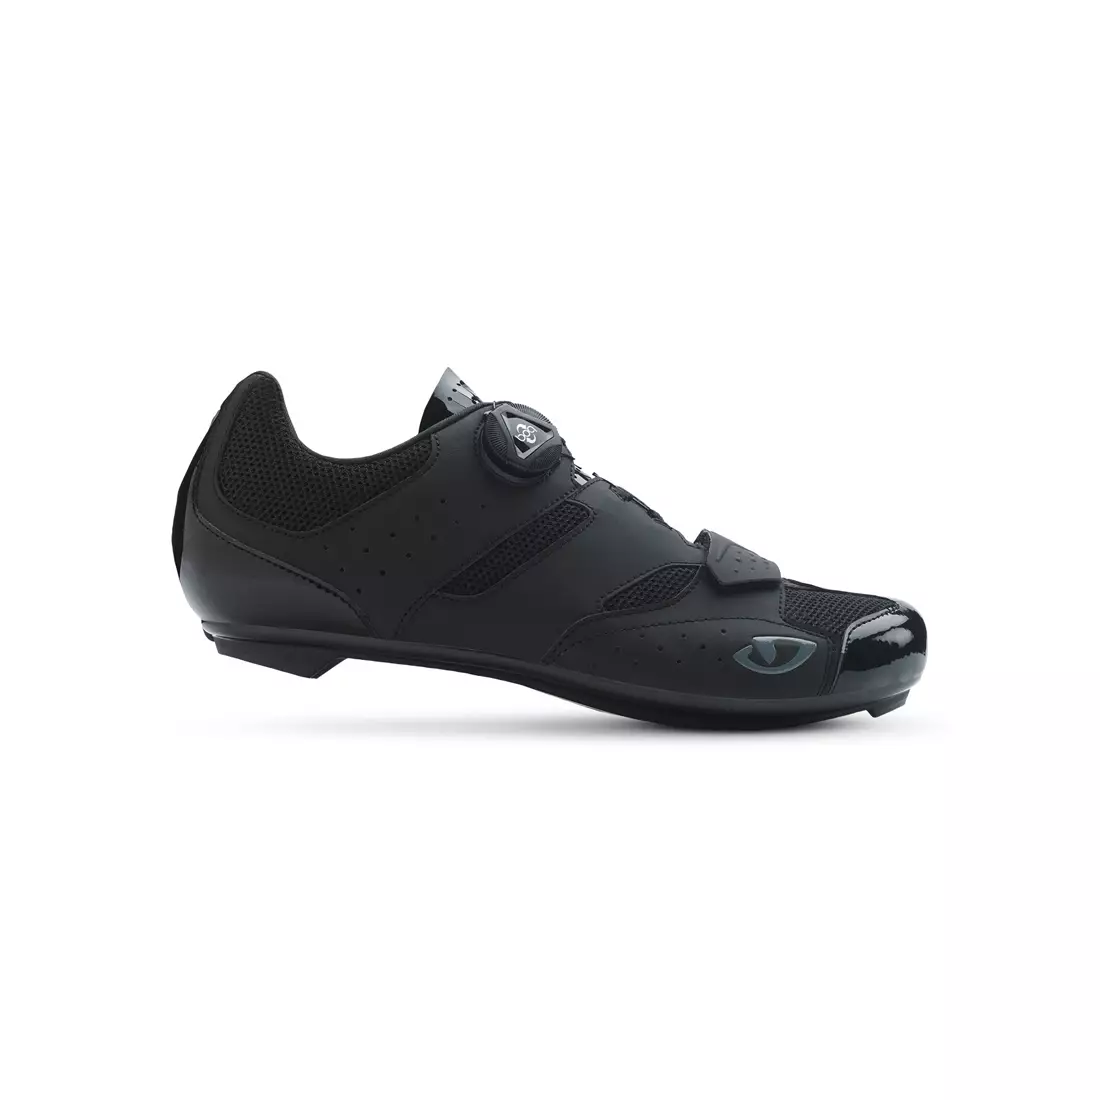 GIRO SAVIX - men's cycling shoes - road black